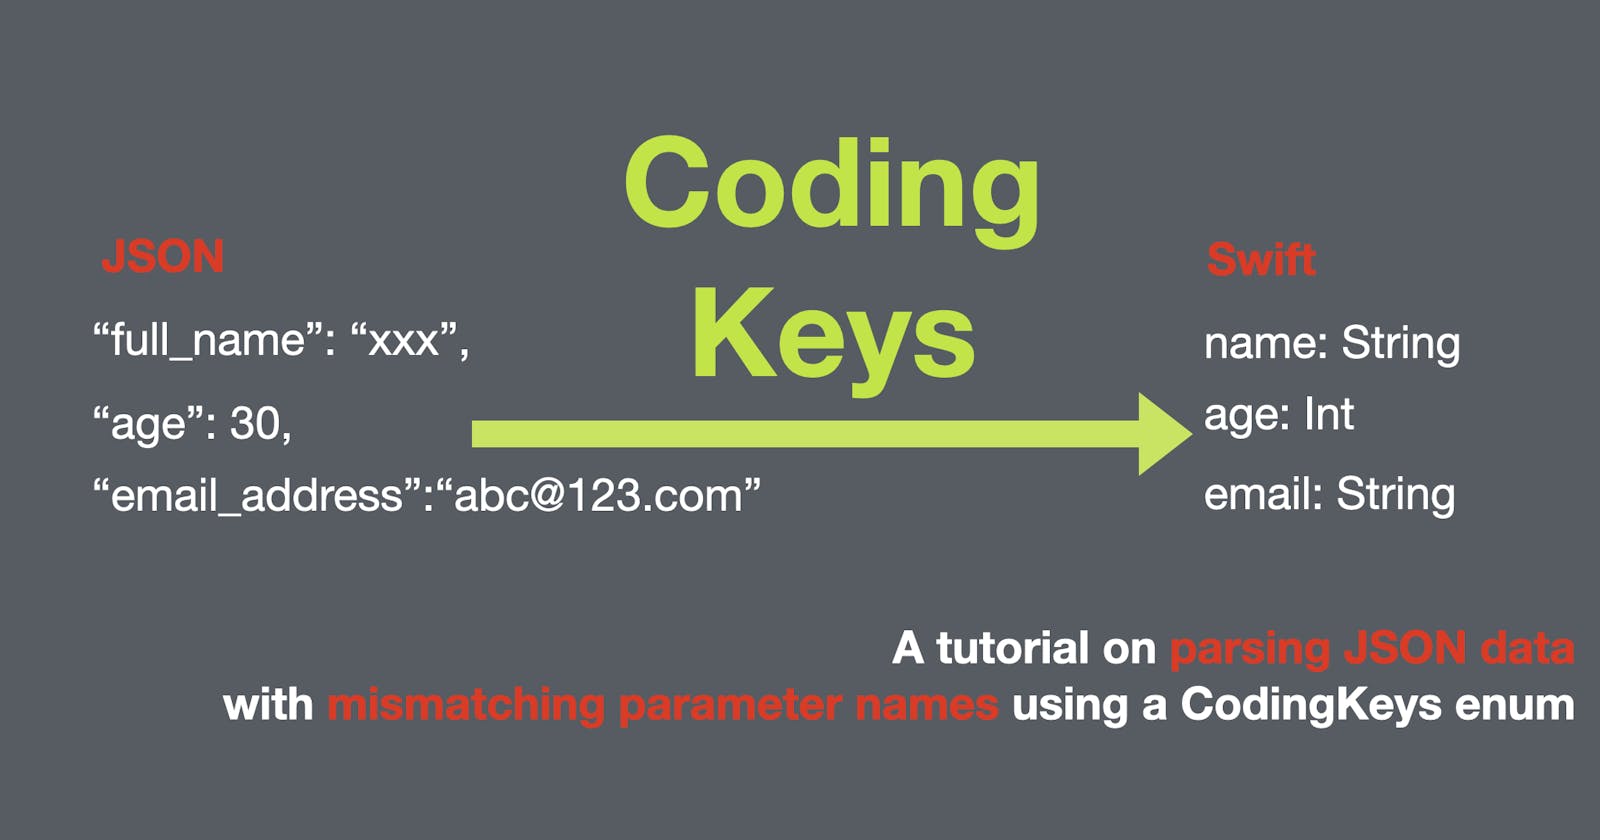 JSON Coding Key in Swift